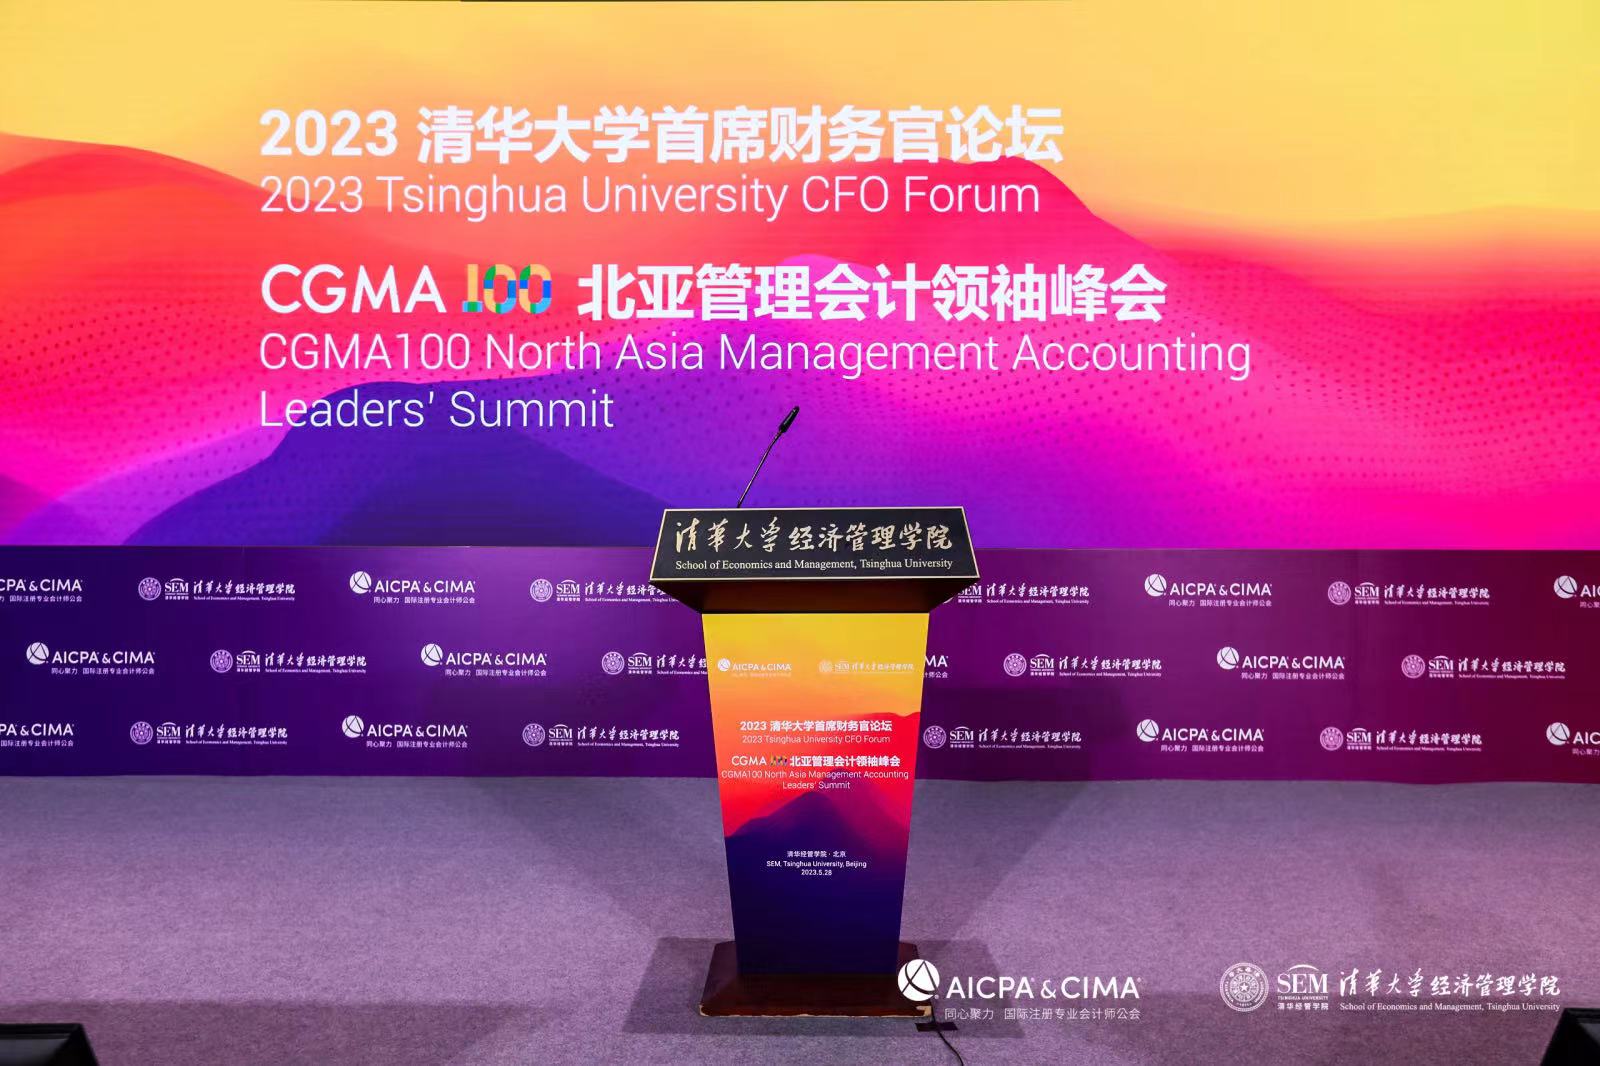 精彩回顾 | 2023 清华大学首席财务官论坛暨CGMA100北亚管理会计领袖峰会成功召开